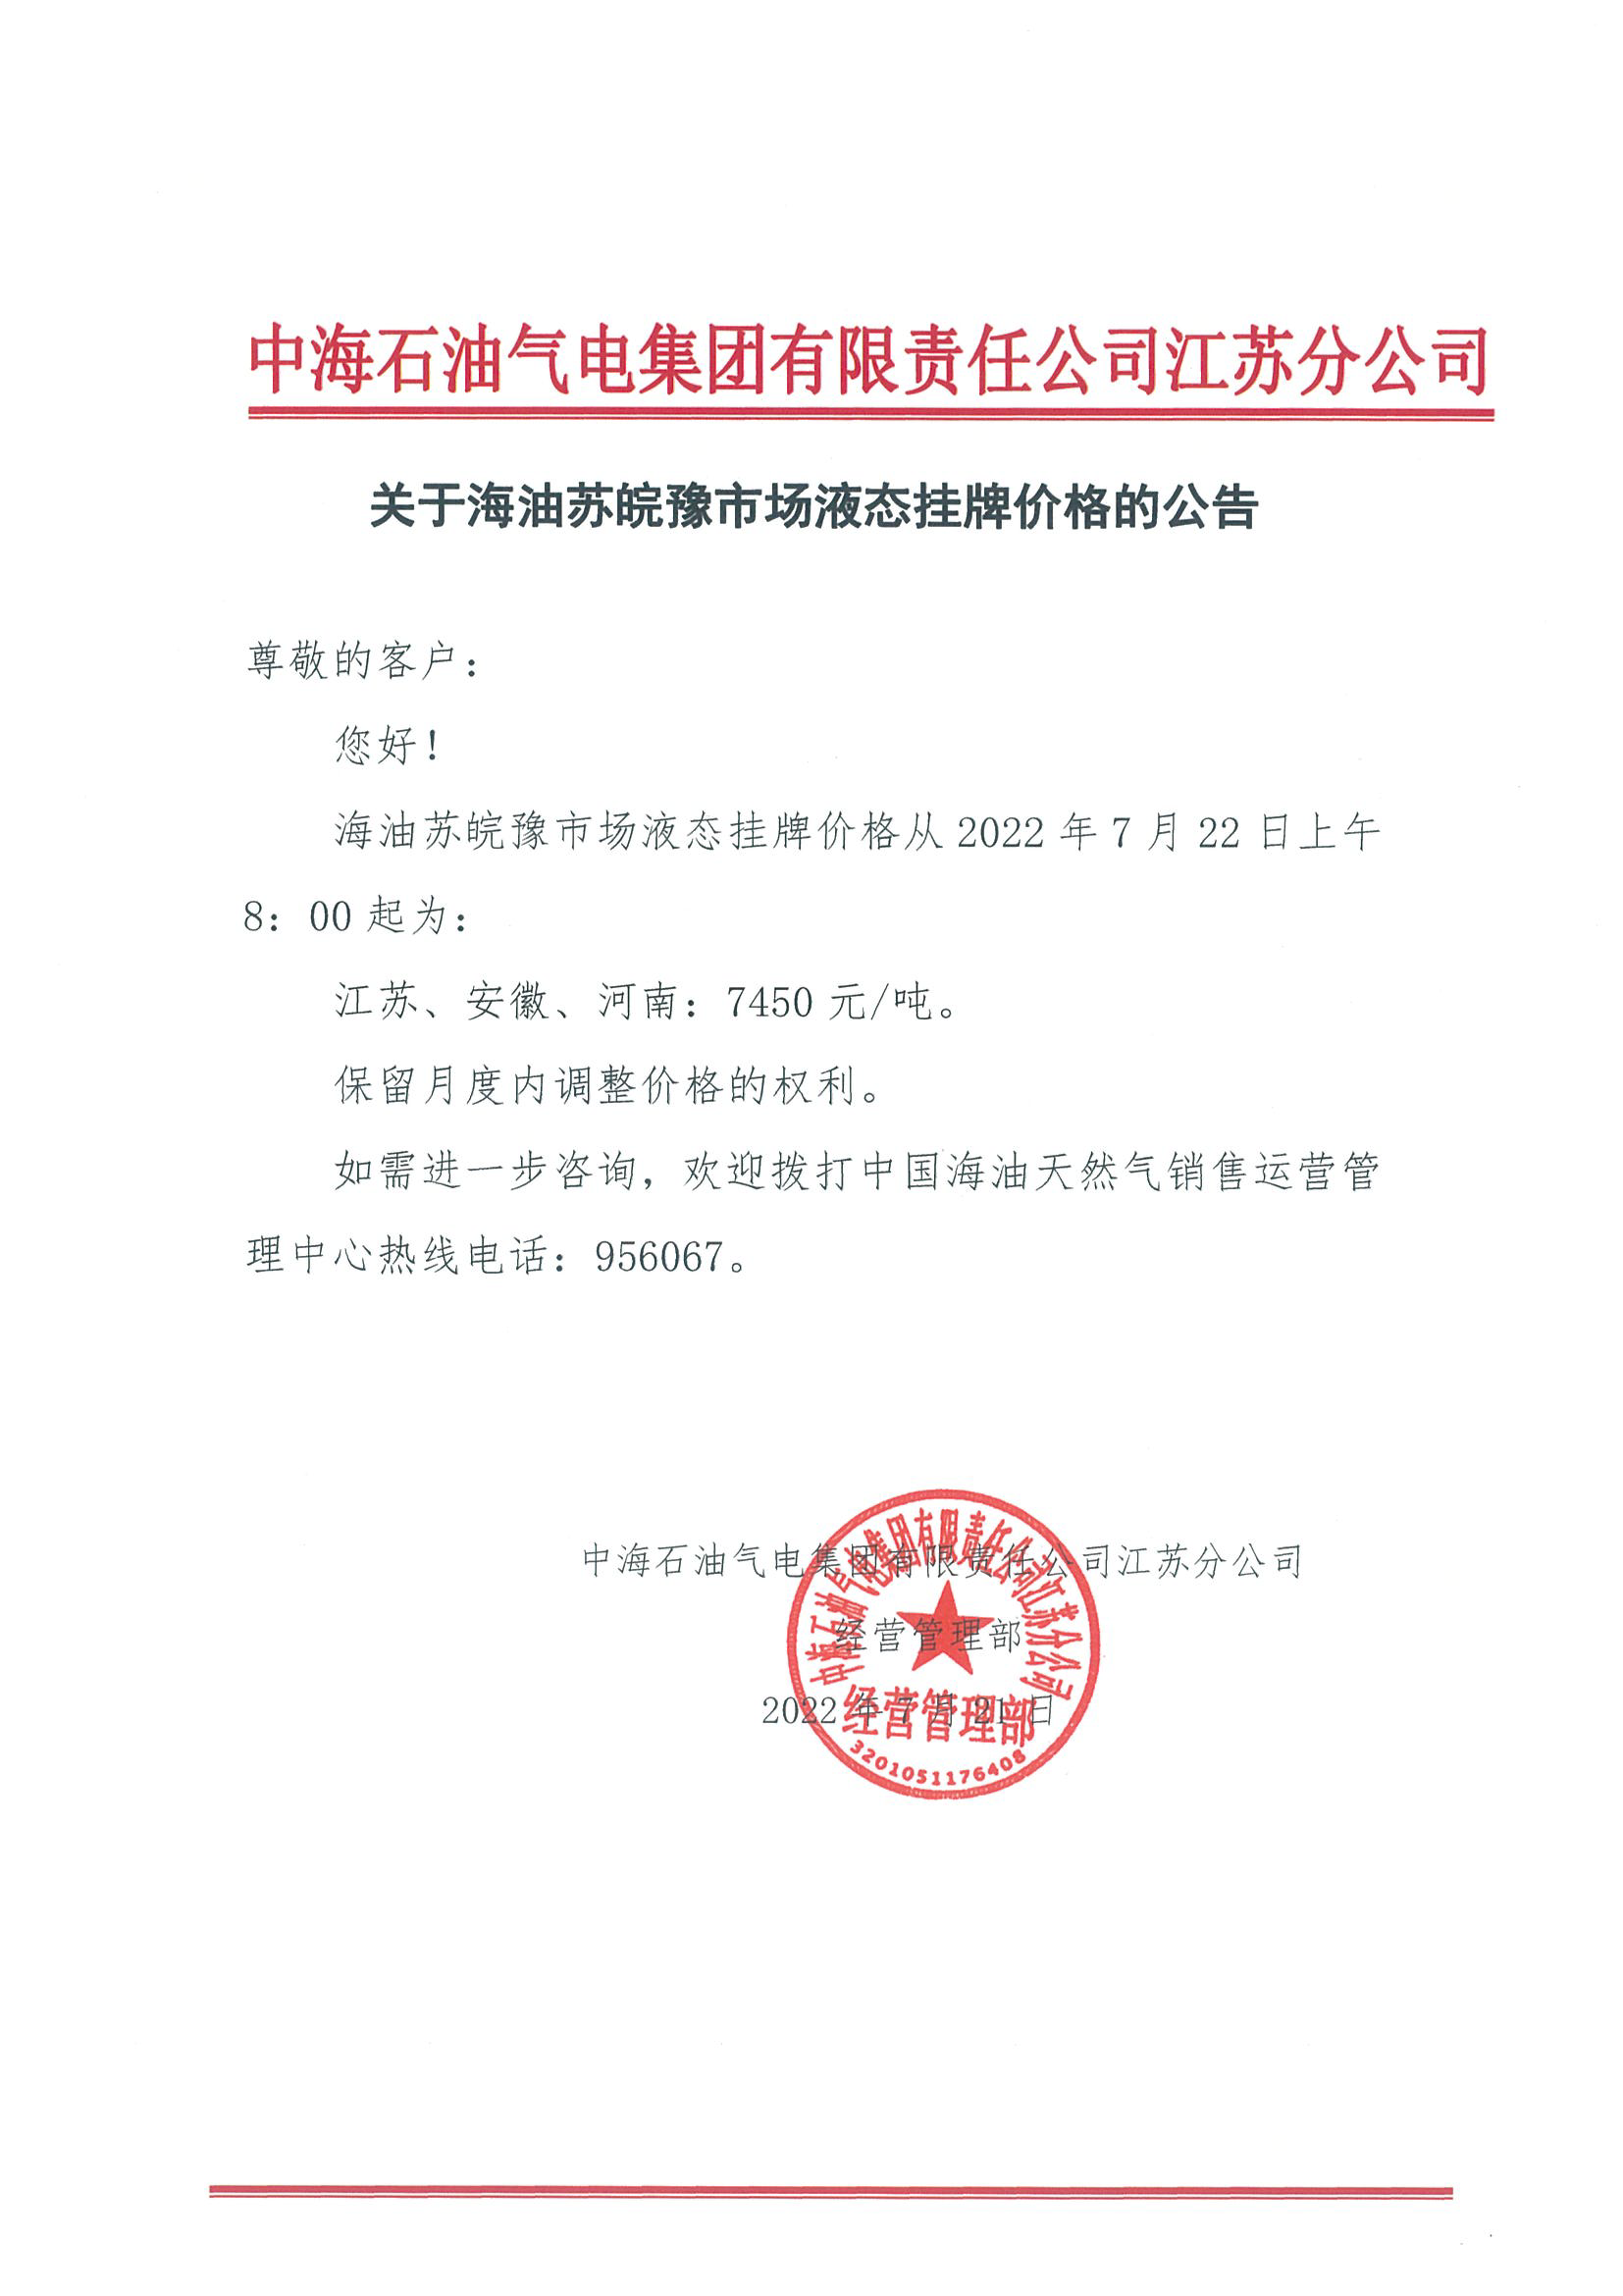 中海油江苏分公司关于7月22日华东苏皖市场价格调整公告.png